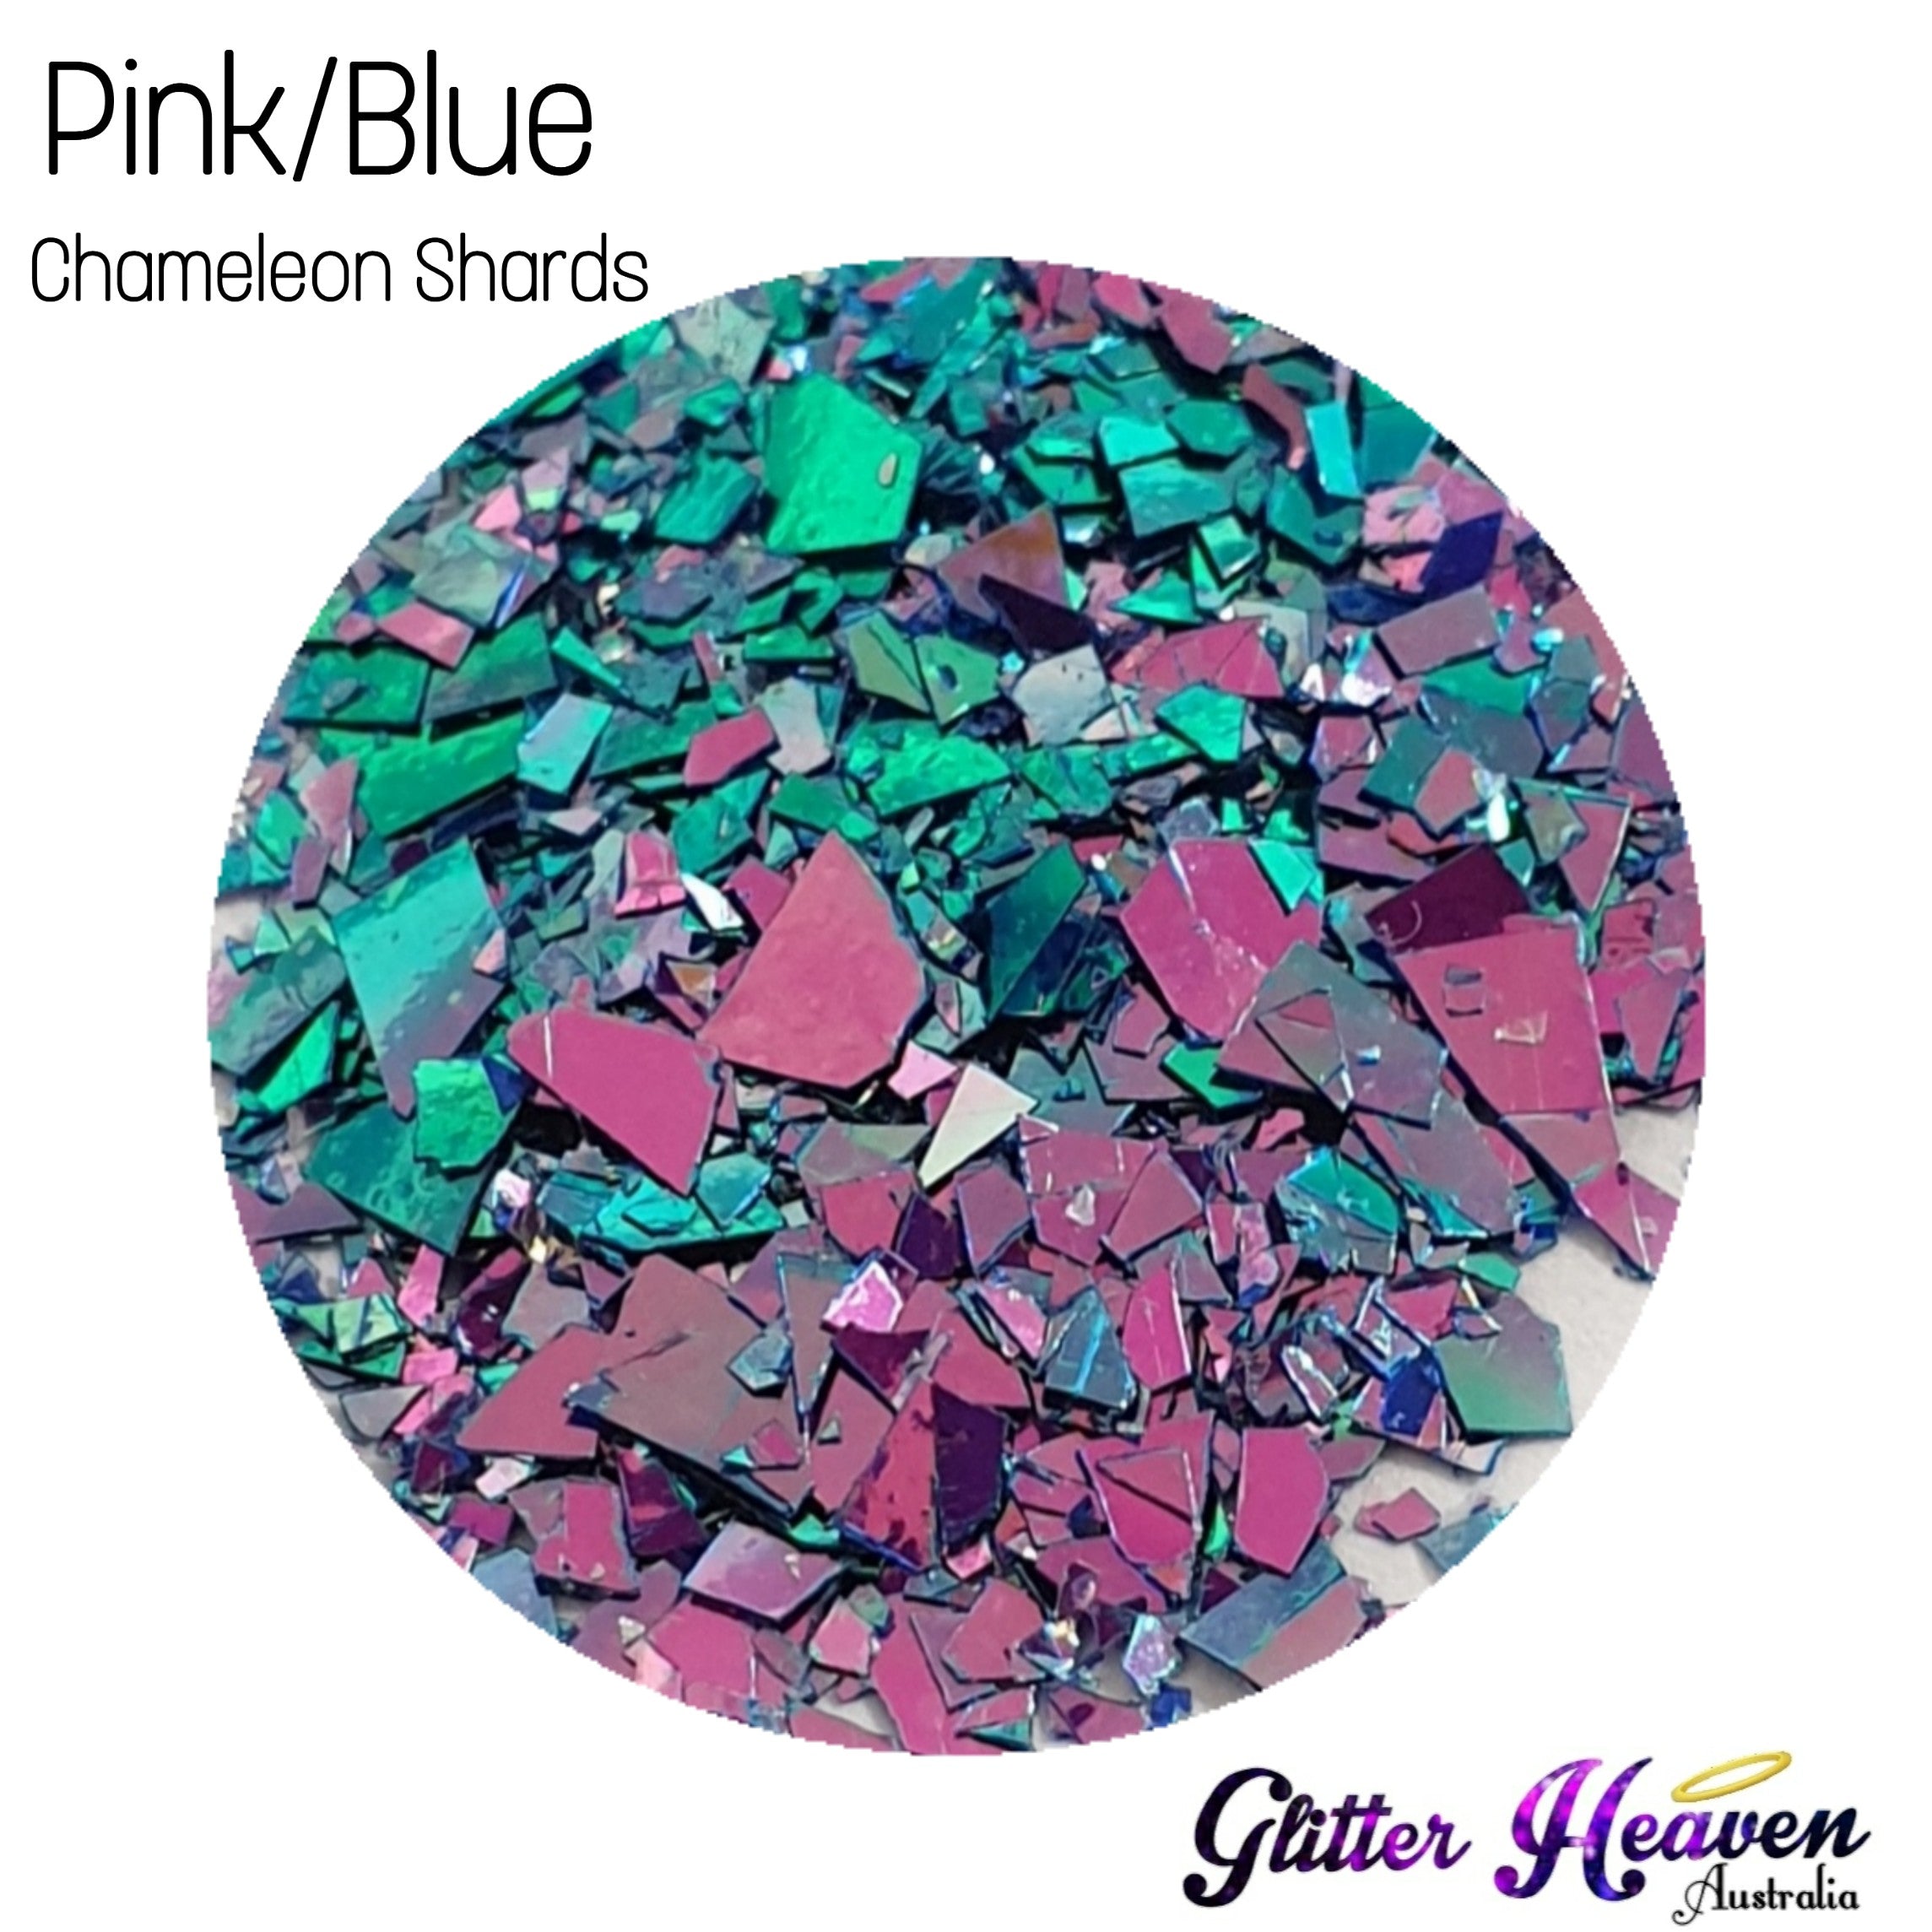 Pink/Blue Chameleon Shards